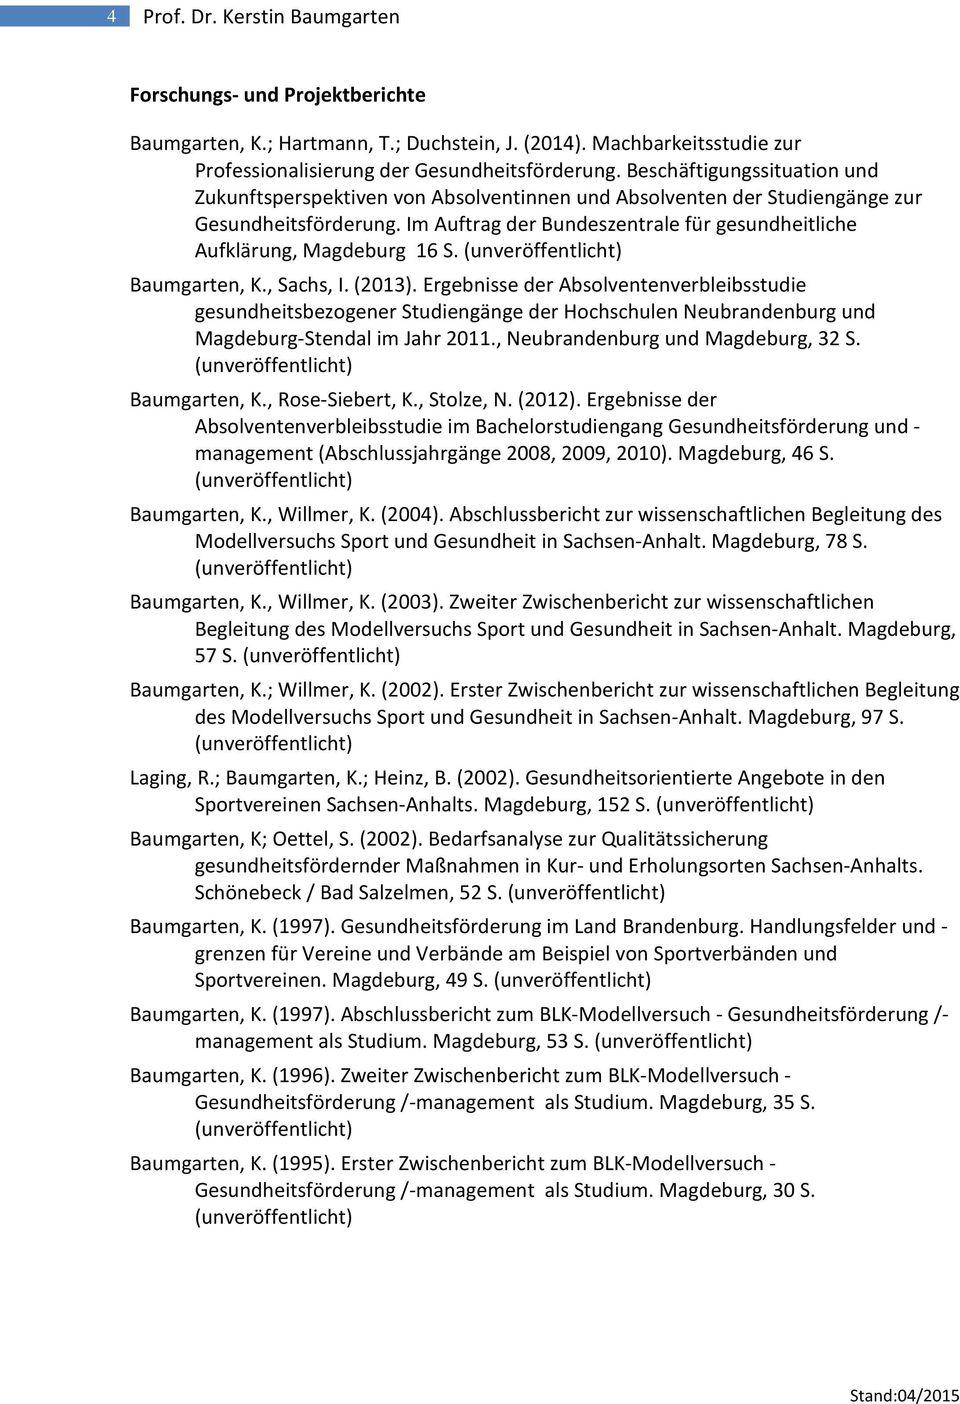 Im Auftrag der Bundeszentrale für gesundheitliche Aufklärung, Magdeburg 16 S. Baumgarten, K., Sachs, I. (2013).